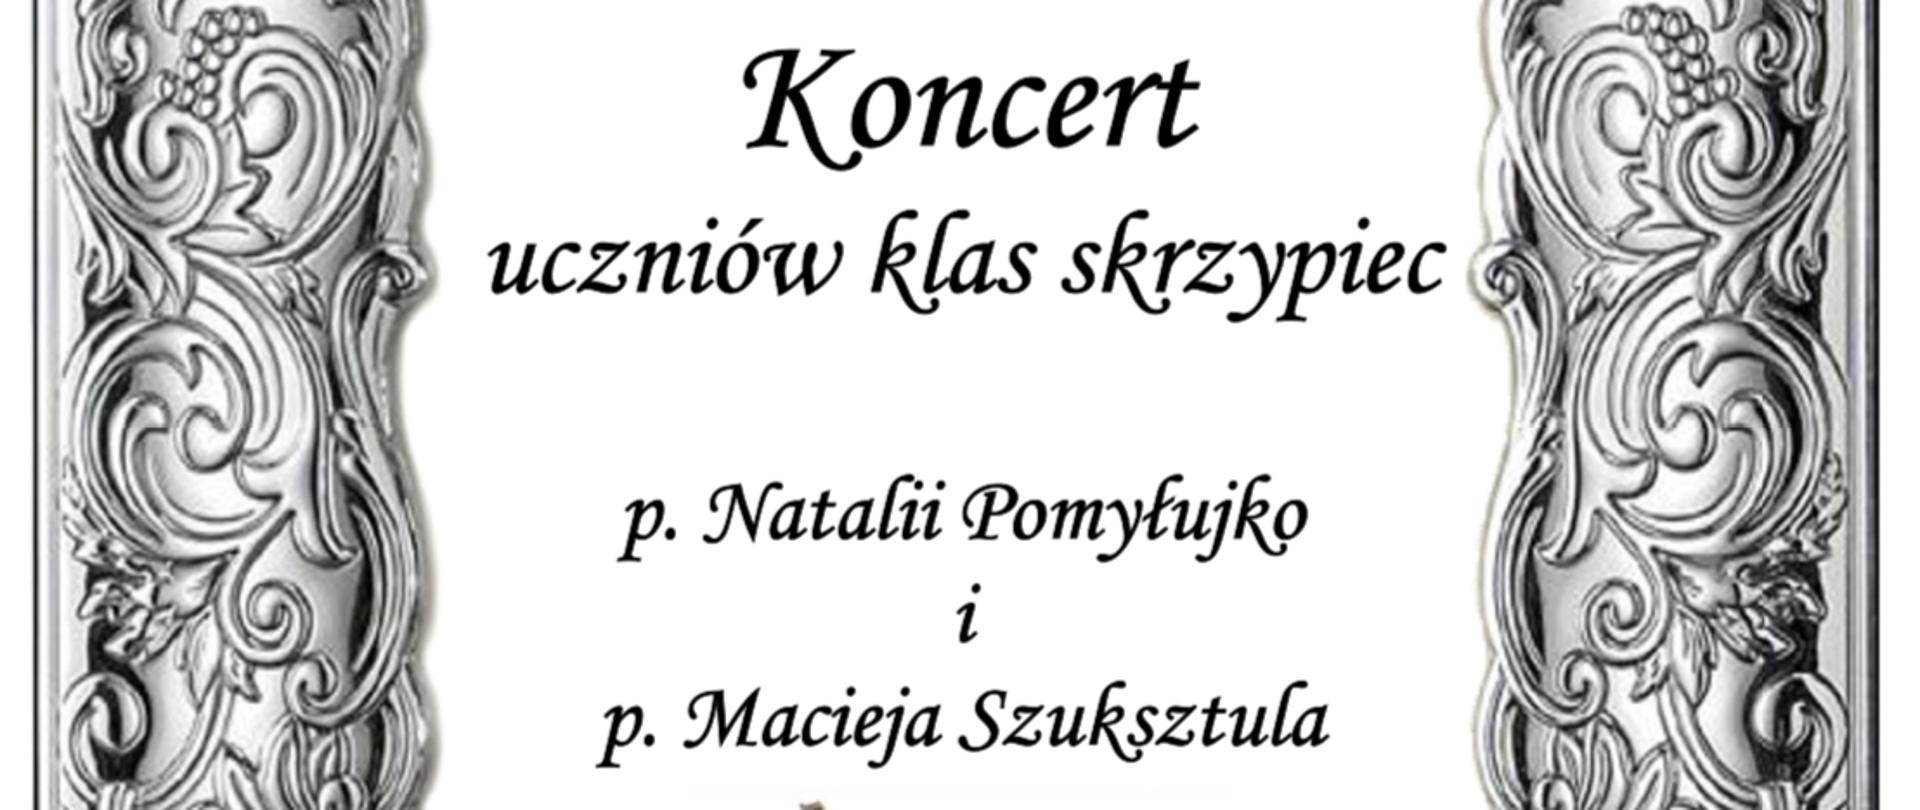 Plakat ze szczegółami koncertu uczniów klas skrzypiec